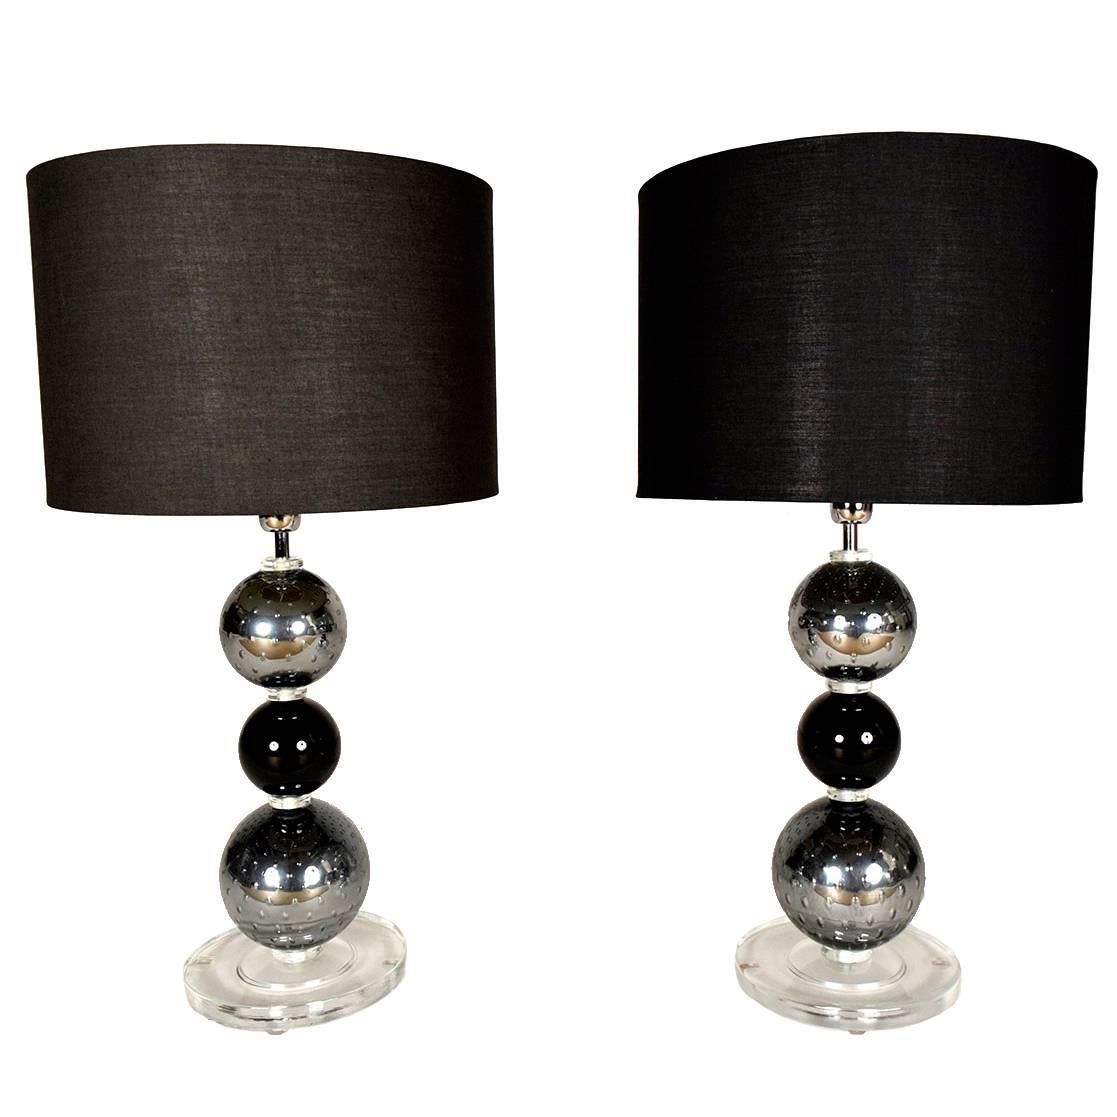 Pair of Italian Murano Table Lamps